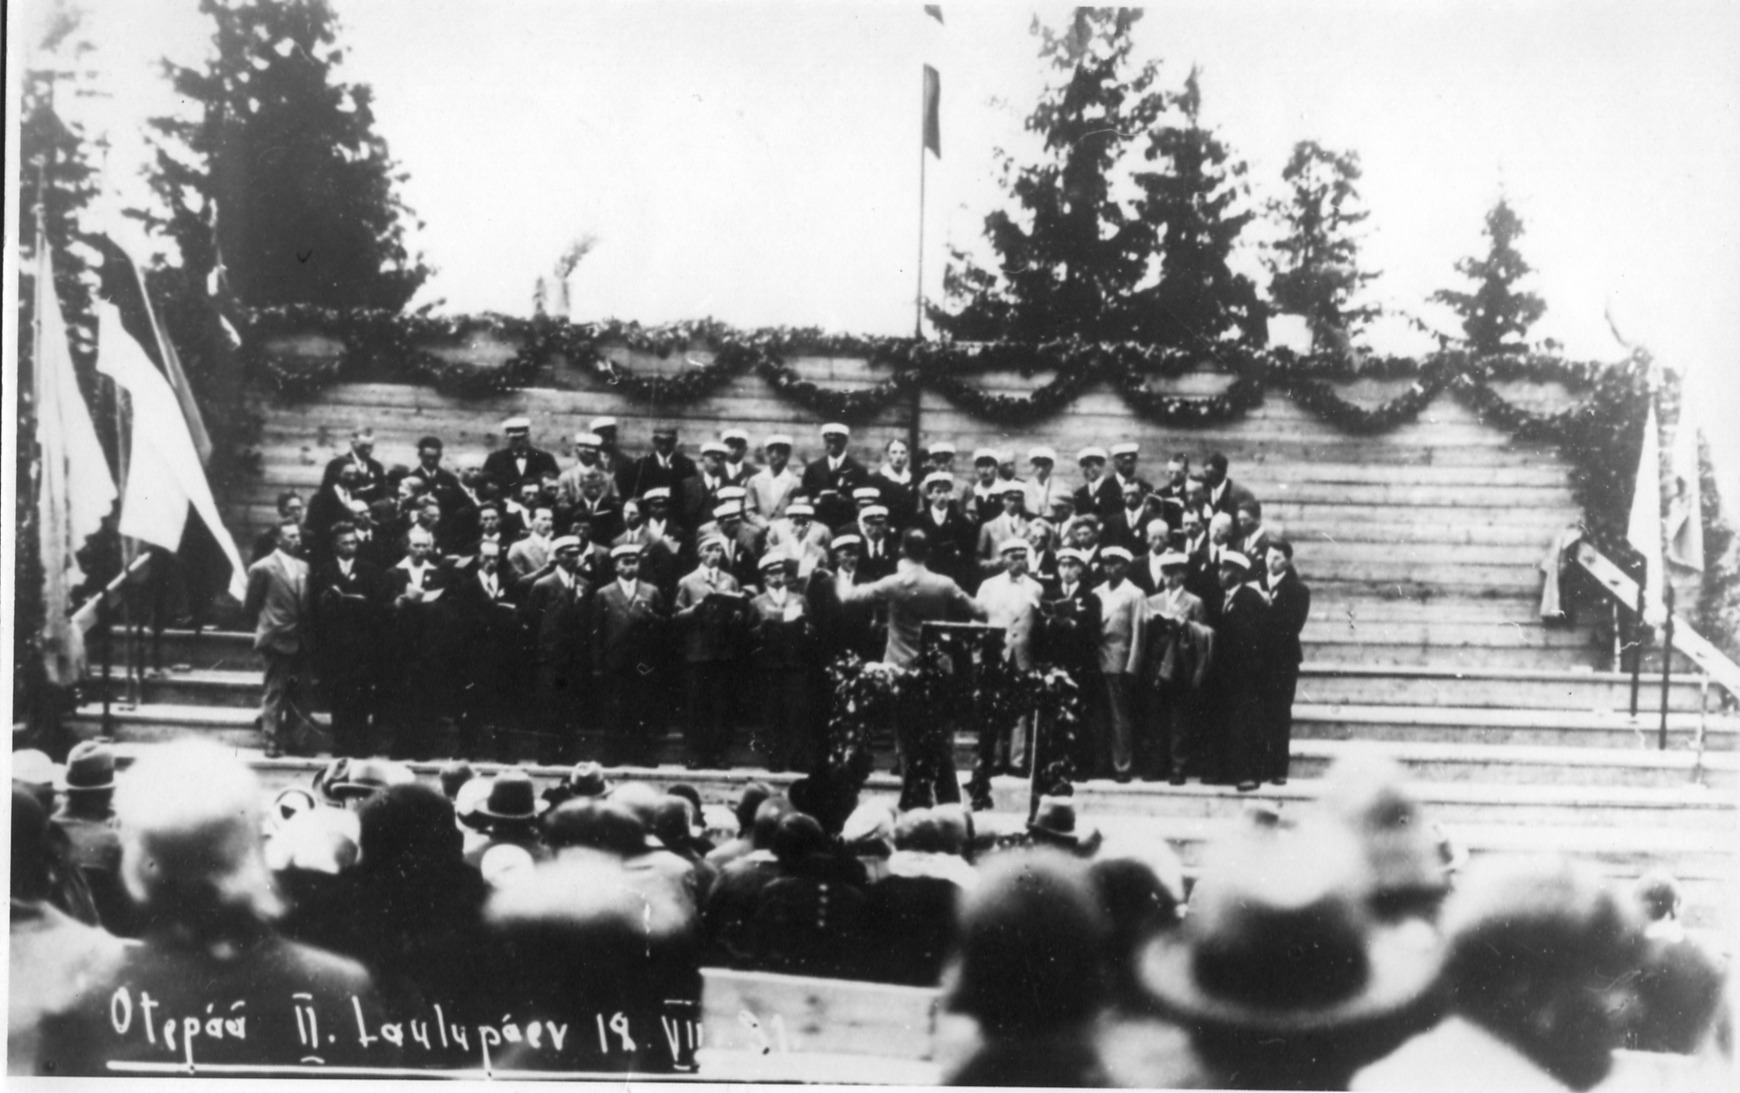 On Otepää II Song Day, the male choir is led by Eduard Tubin